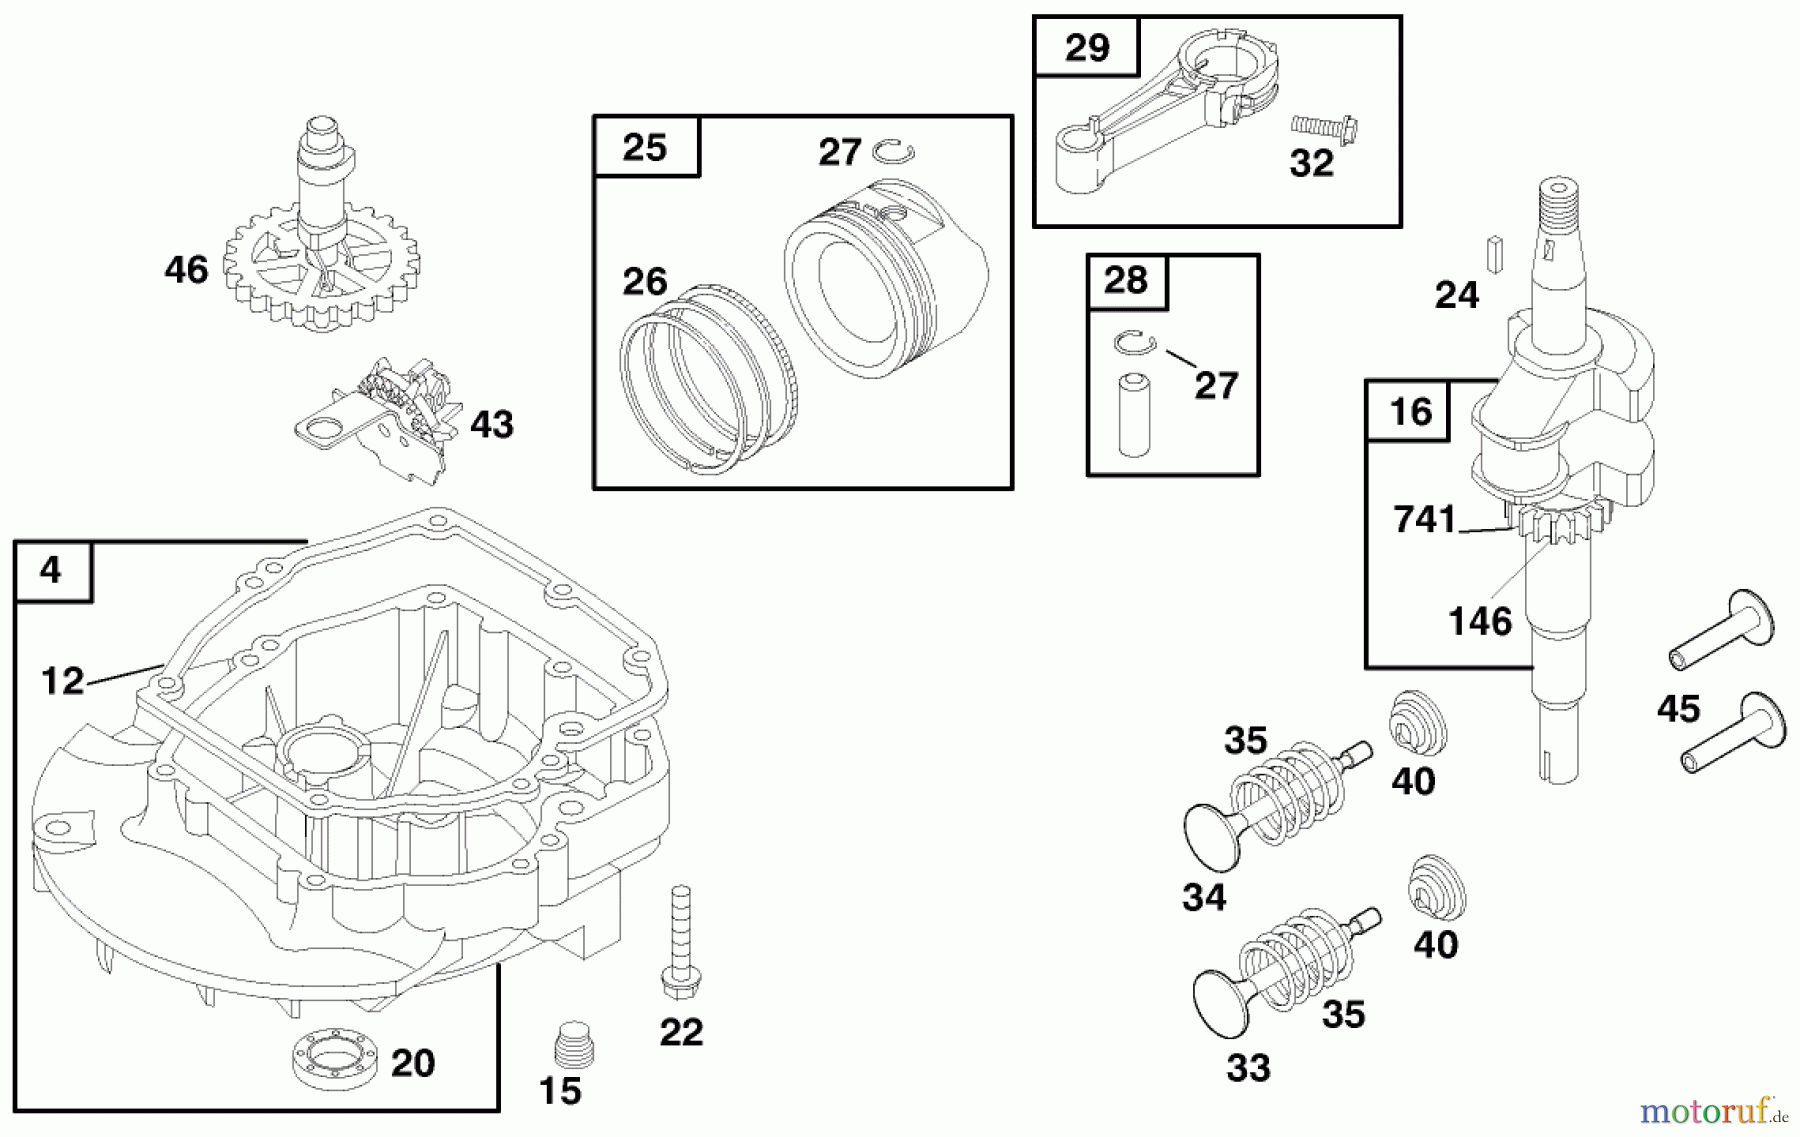  Laubbläser / Laubsauger 53080 - Toro Lawn Vacuum, 9 cu. ft. (SN: 890001 - 899999) (1998) ENGINE BRIGGS & STRATTON MODEL 12F702-1741-A1 #2